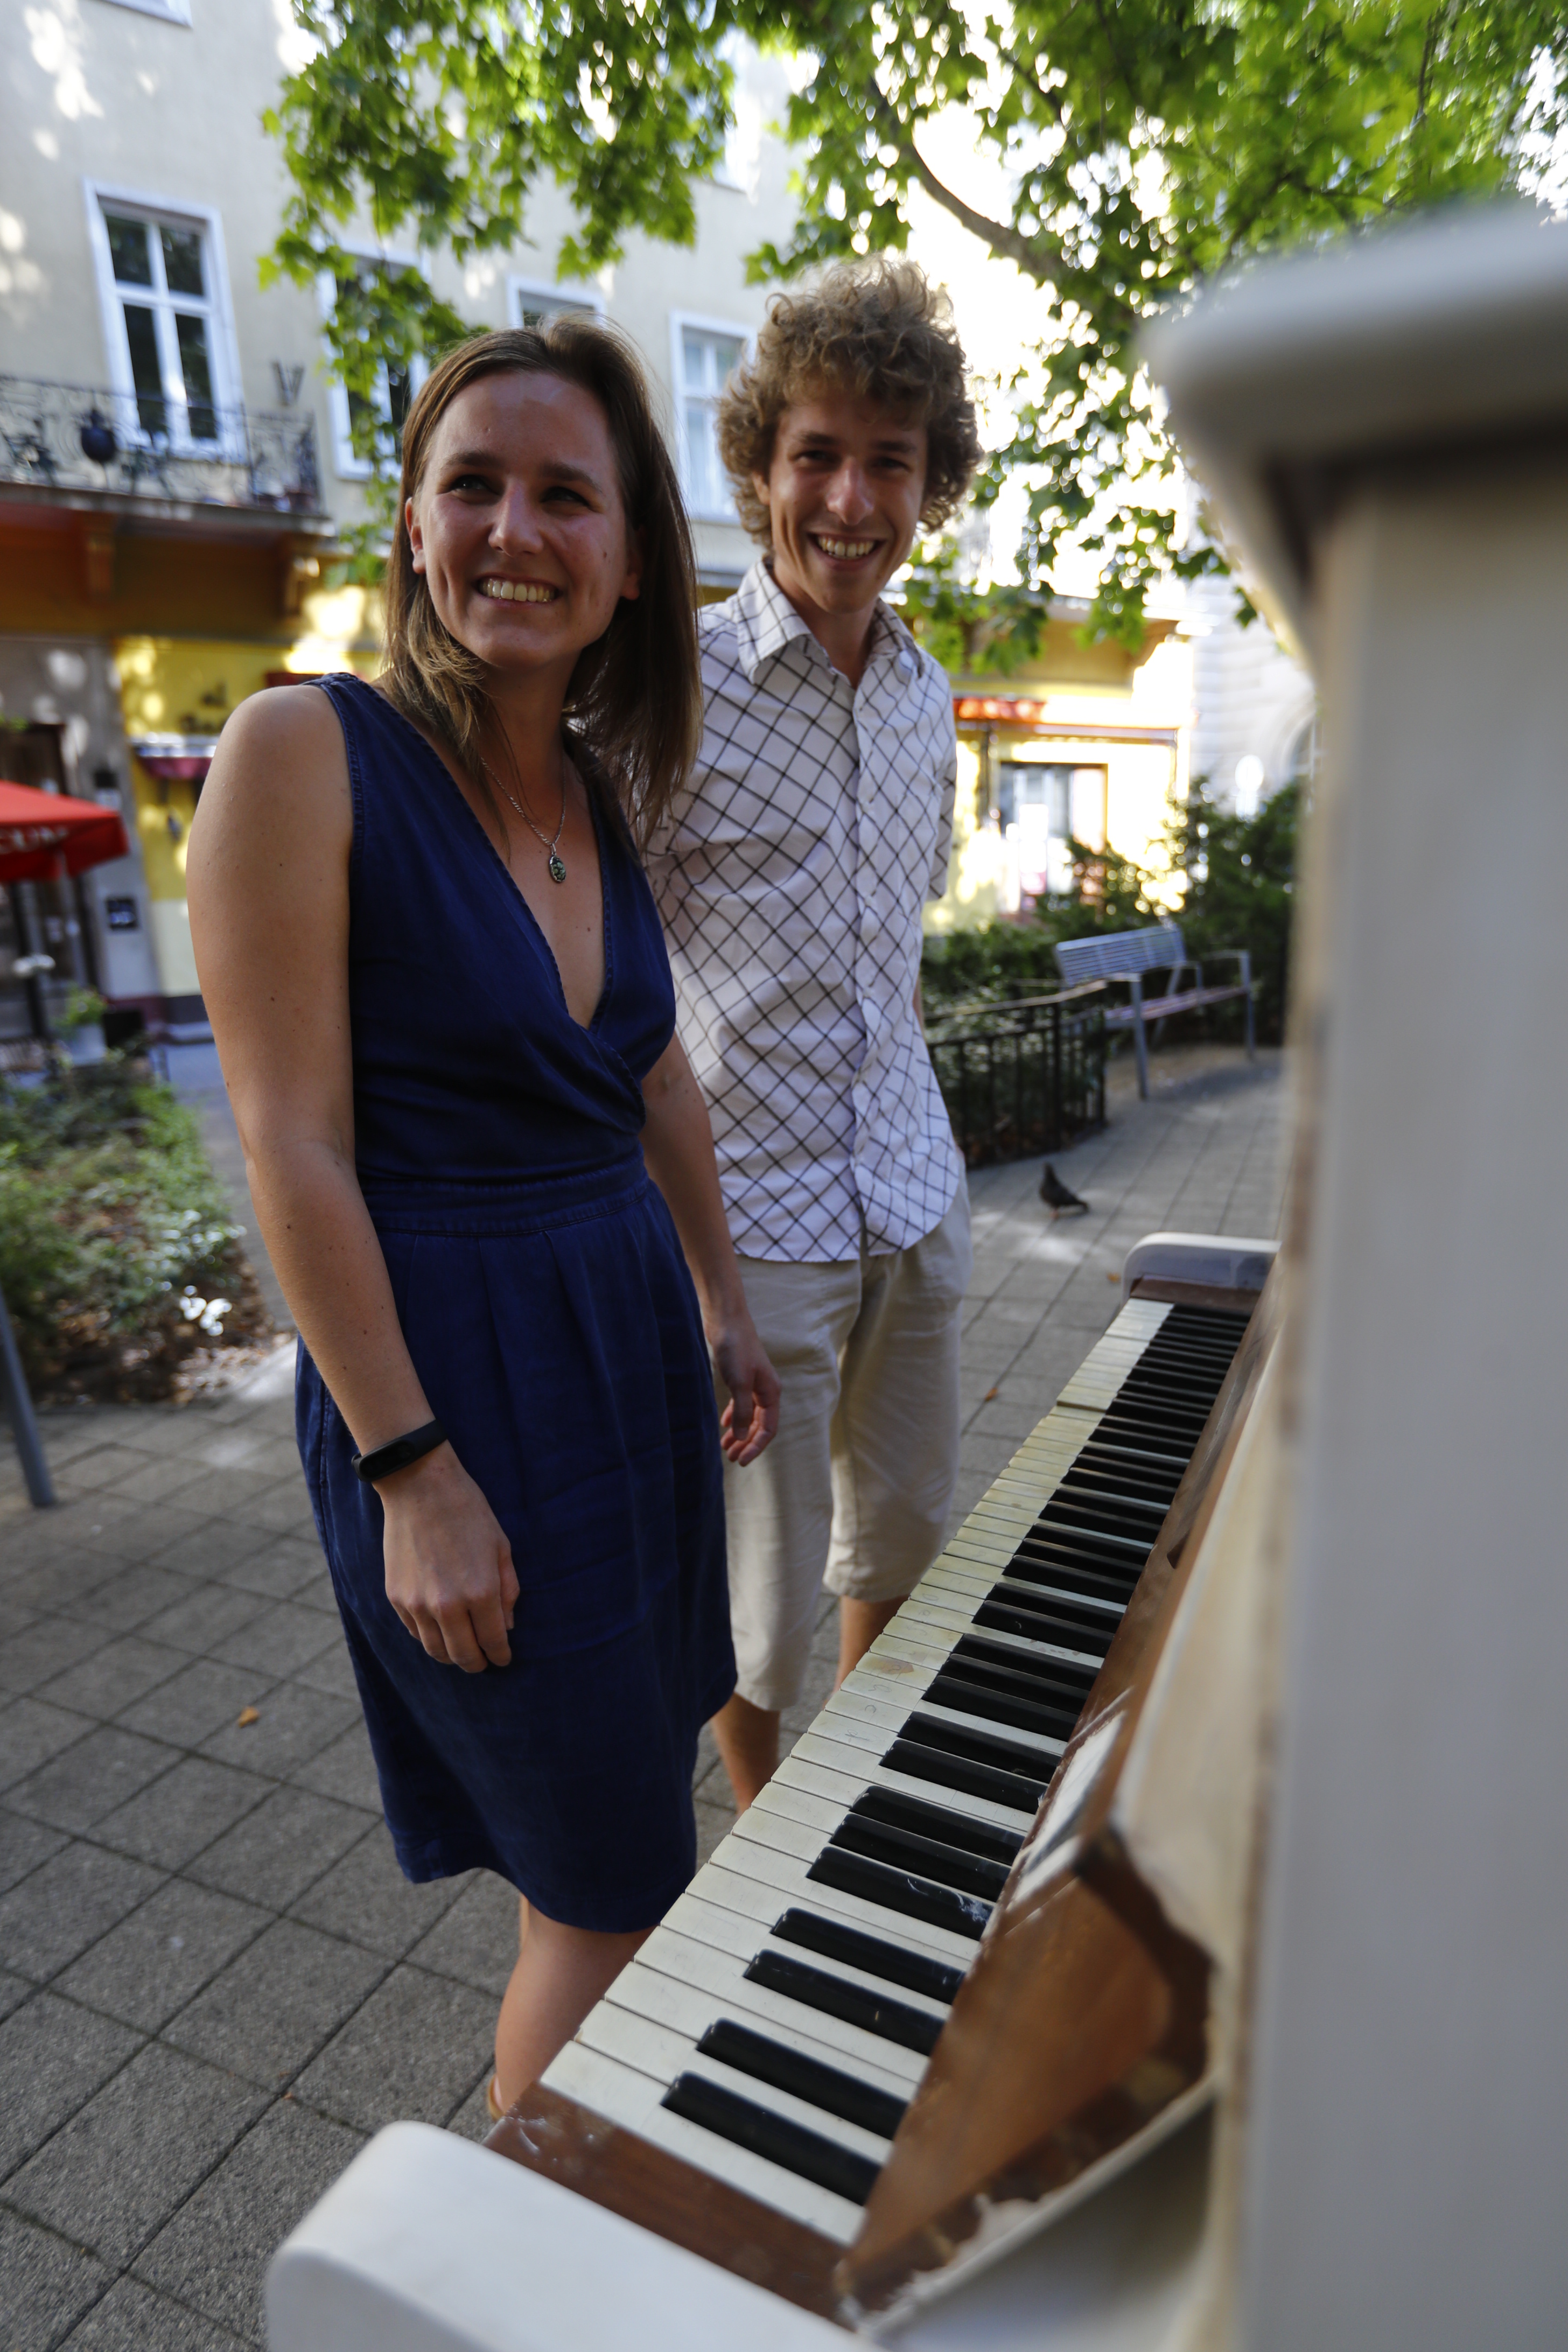 Rejtélyes! Zongorák jelentek meg a semmiből a Liszt téren! - Galéria - Blikk